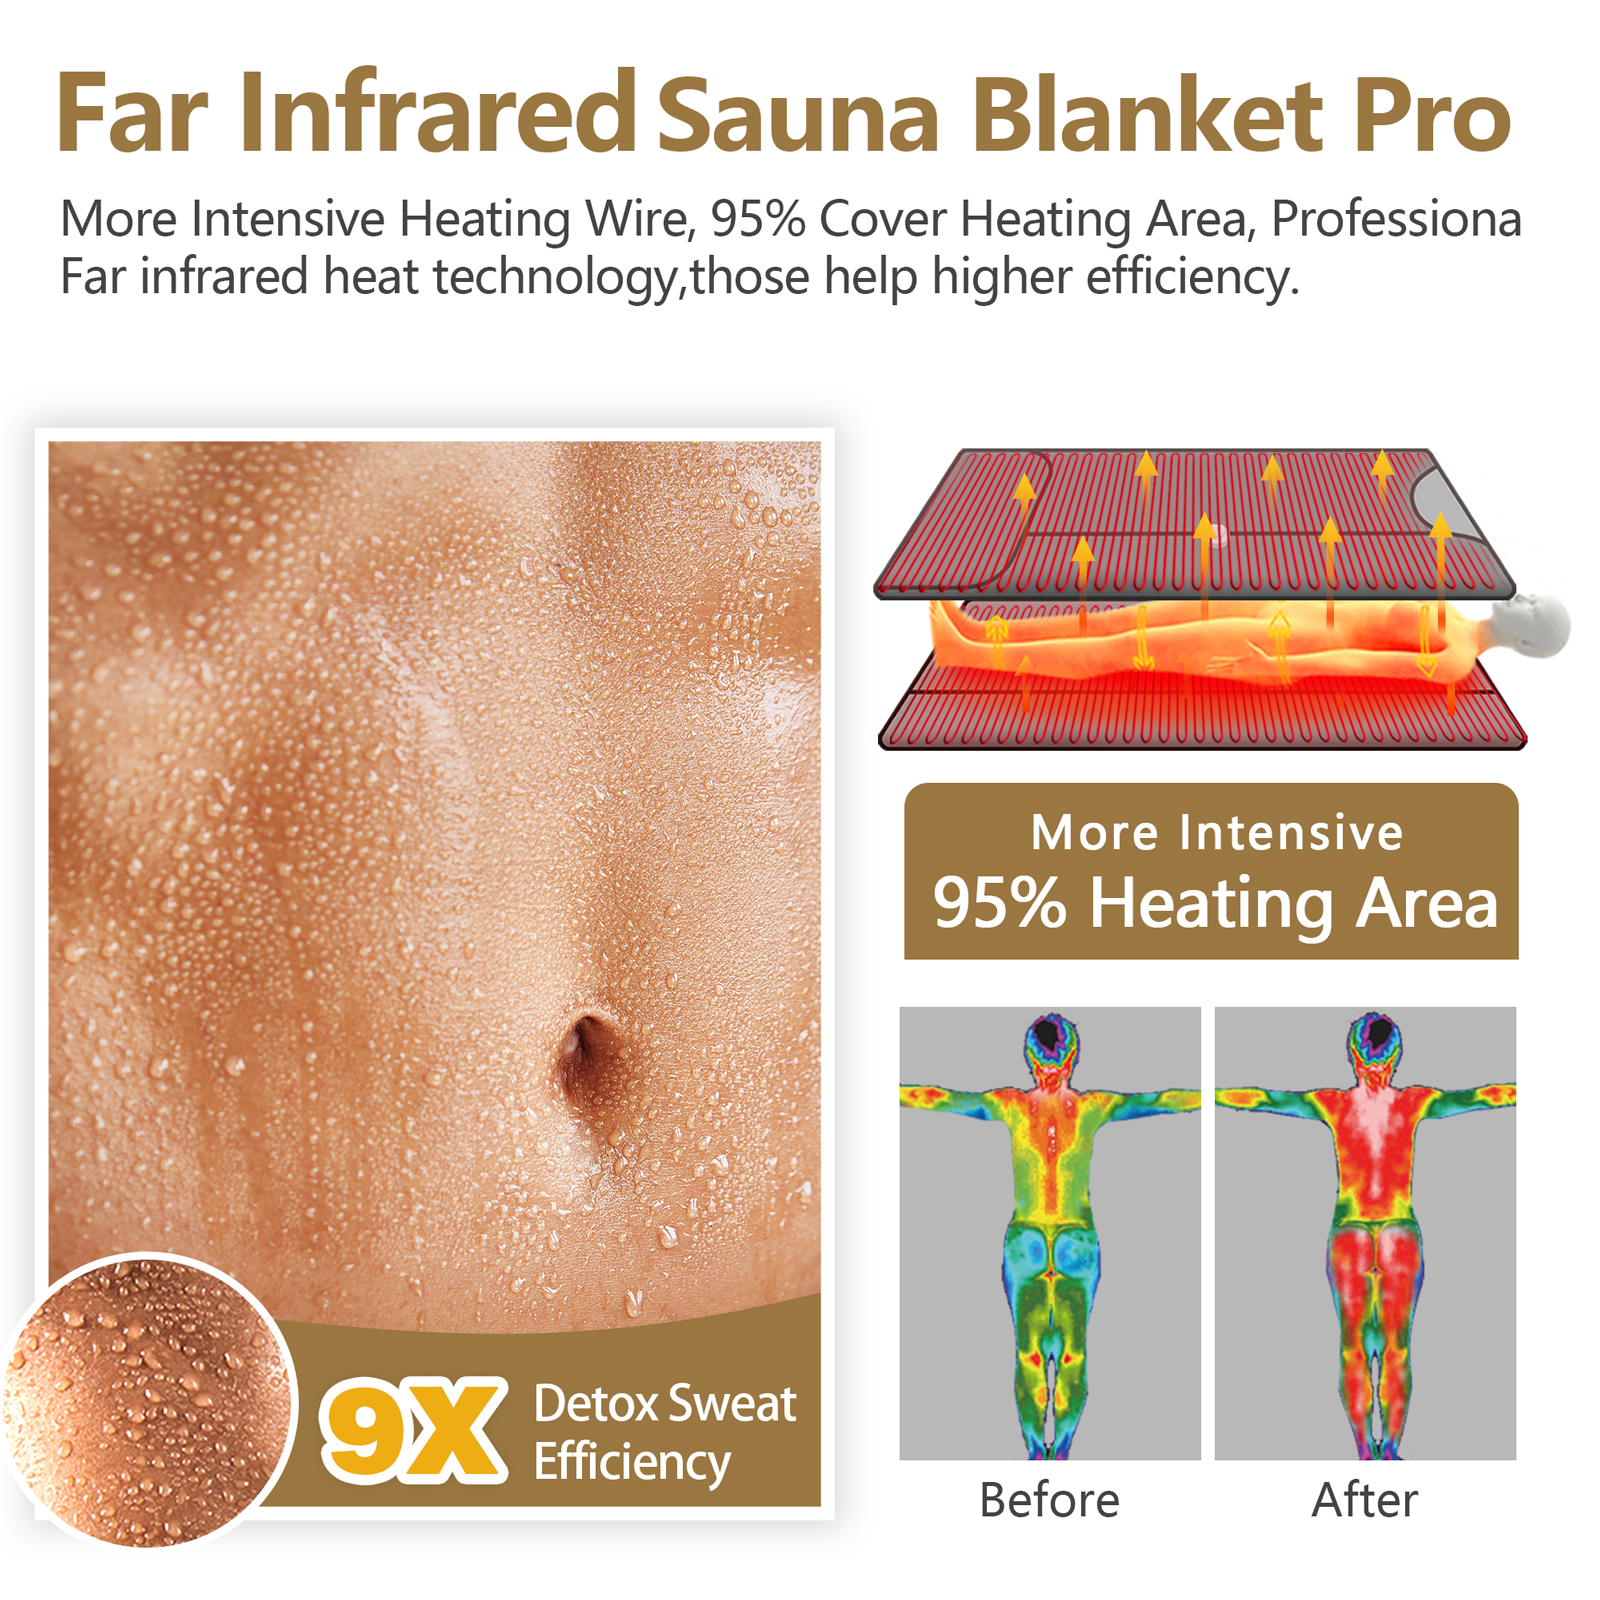 Qu'est-ce qu'un sauna infrarouge ? A-t-il des avantages pour la santé? 2